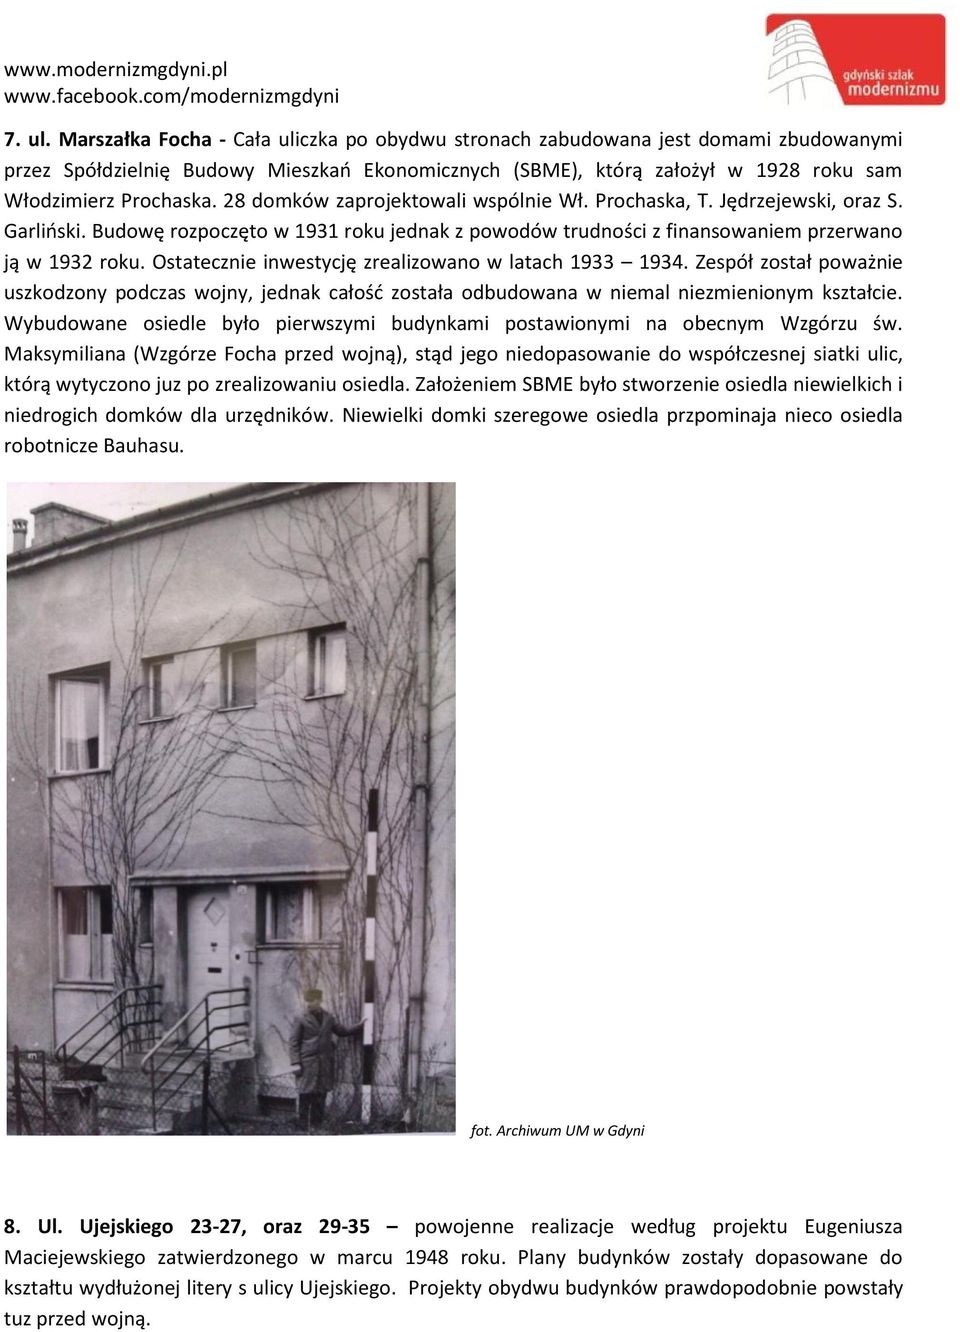 28 domków zaprojektowali wspólnie Wł. Prochaska, T. Jędrzejewski, oraz S. Garliński. Budowę rozpoczęto w 1931 roku jednak z powodów trudności z finansowaniem przerwano ją w 1932 roku.